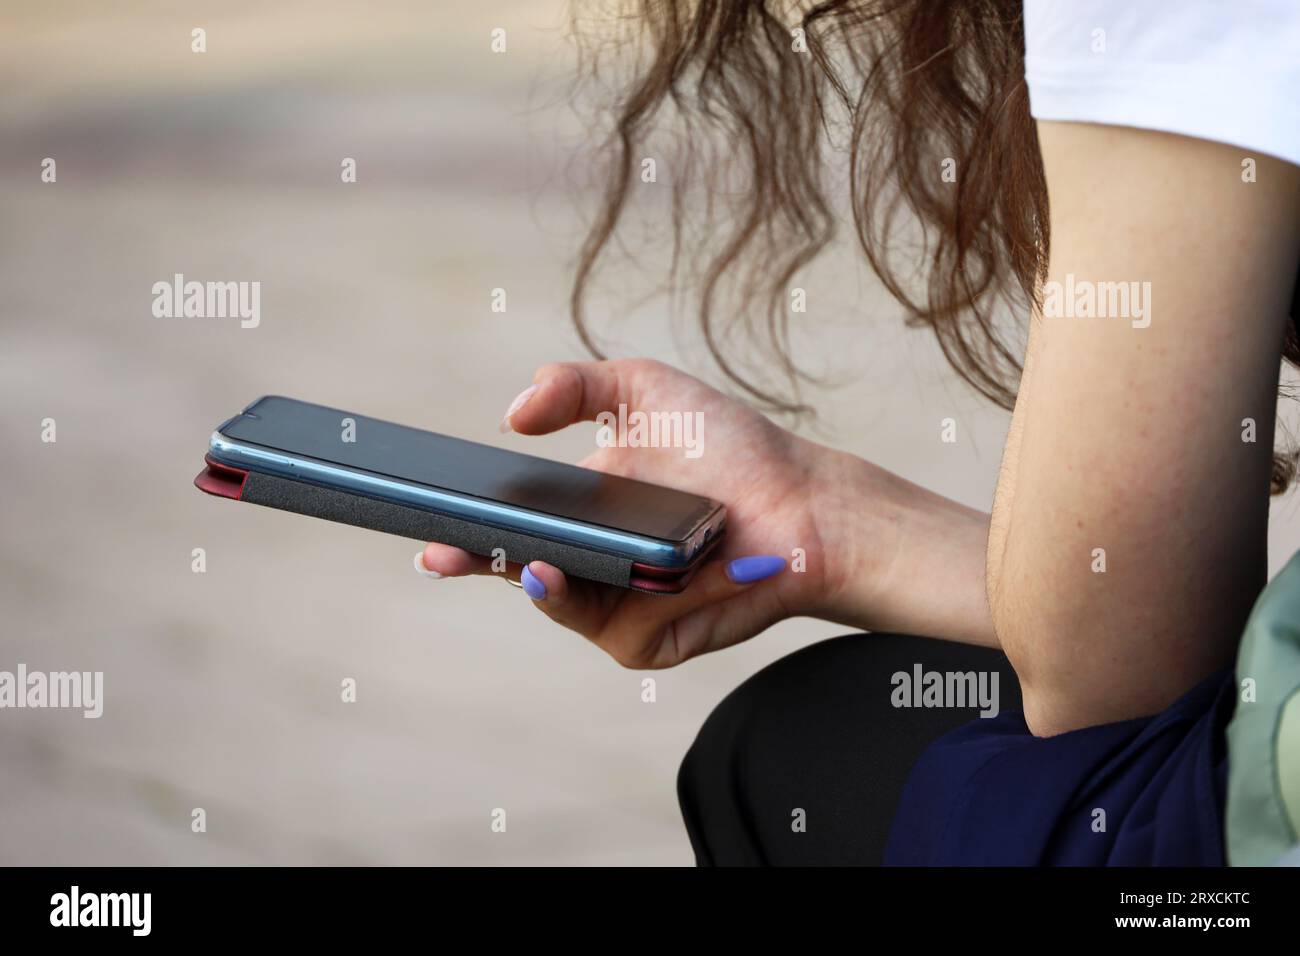 Smartphone in weiblichen Händen aus nächster Nähe. Mädchen, das Handy benutzt, während sie auf der Straße sitzt Stockfoto